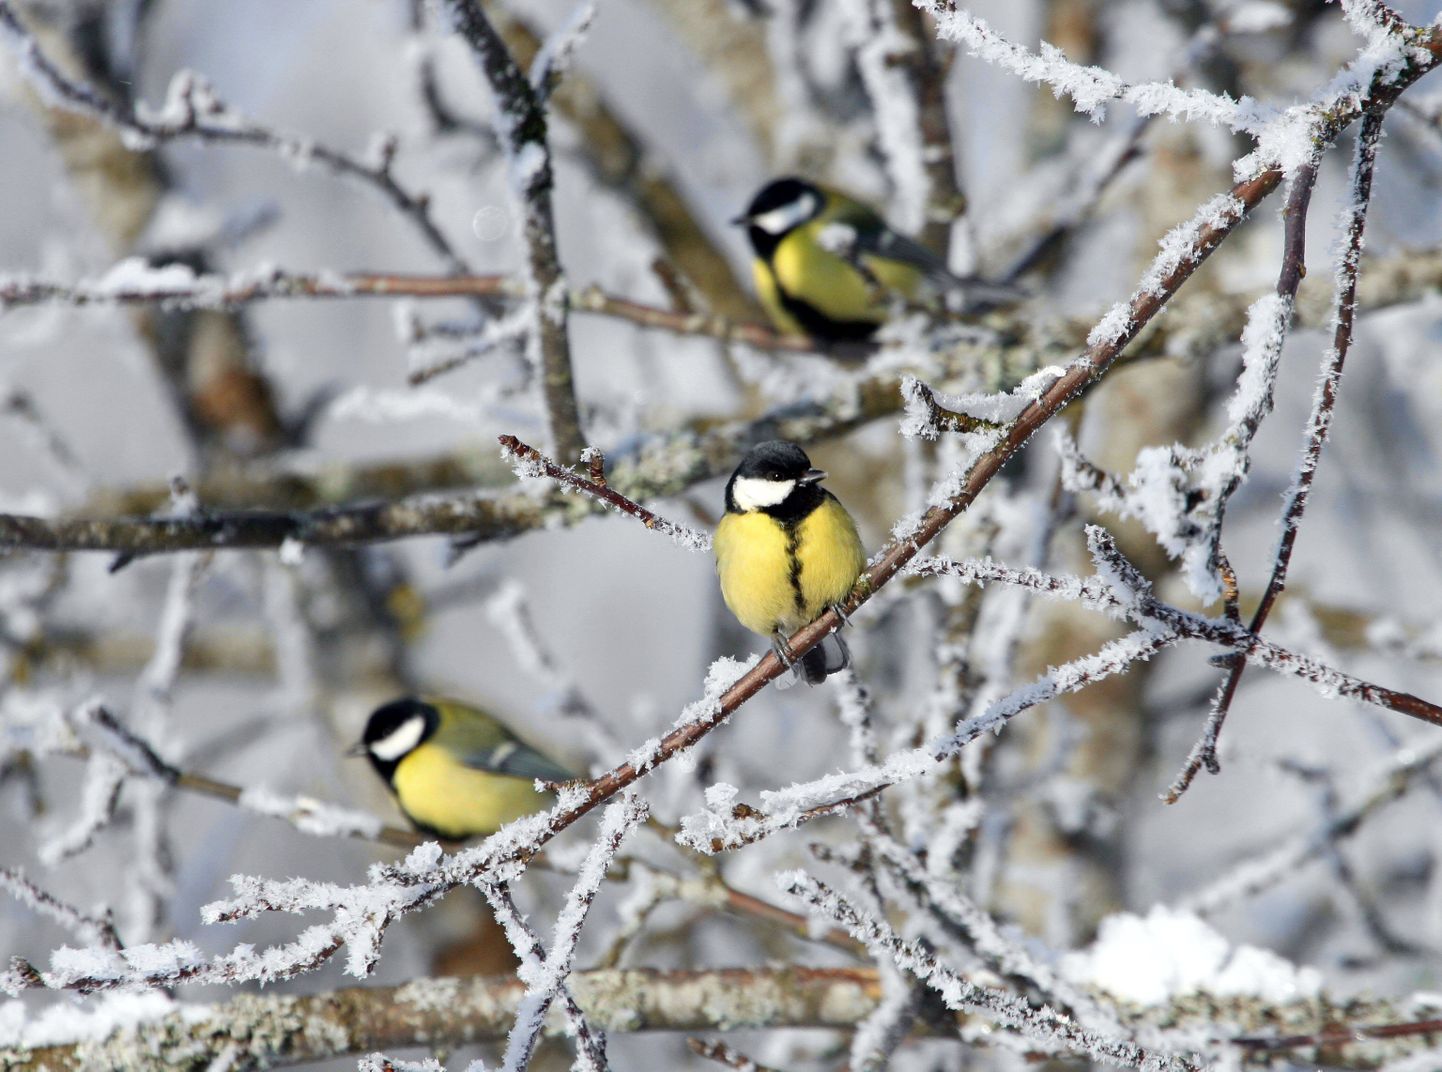 Eesti ornitoloogiaühing kutsub kõiki linnusõpru jaanuari viimasel nädalavahetusel osalema talvisel aialinnuvaatlusel.